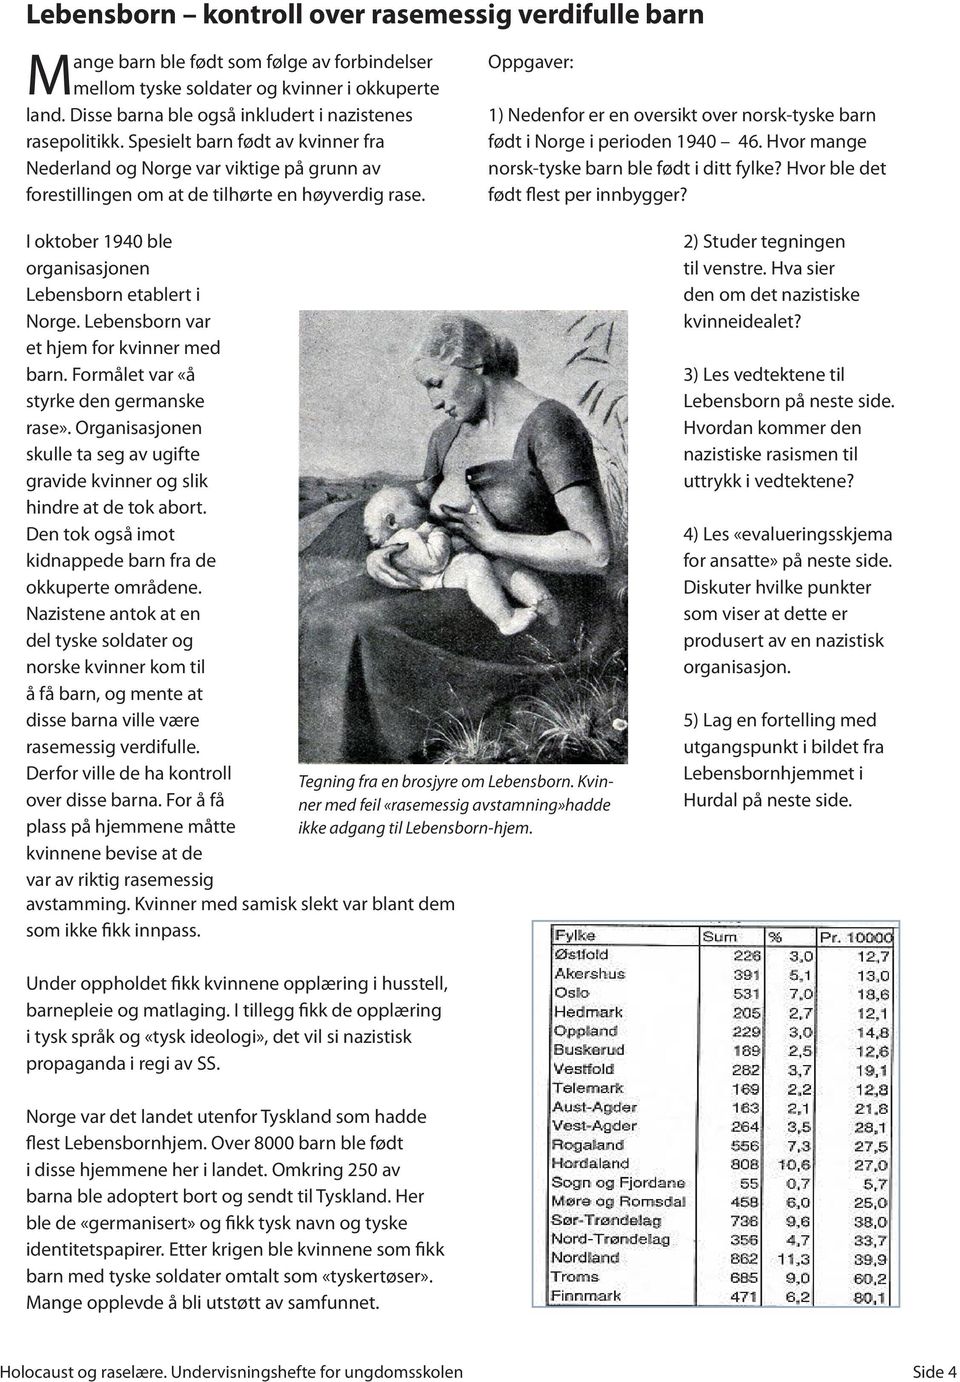 1) Nedenfor er en oversikt over norsk-tyske barn født i Norge i perioden 1940 46. Hvor mange norsk-tyske barn ble født i ditt fylke? Hvor ble det født flest per innbygger?